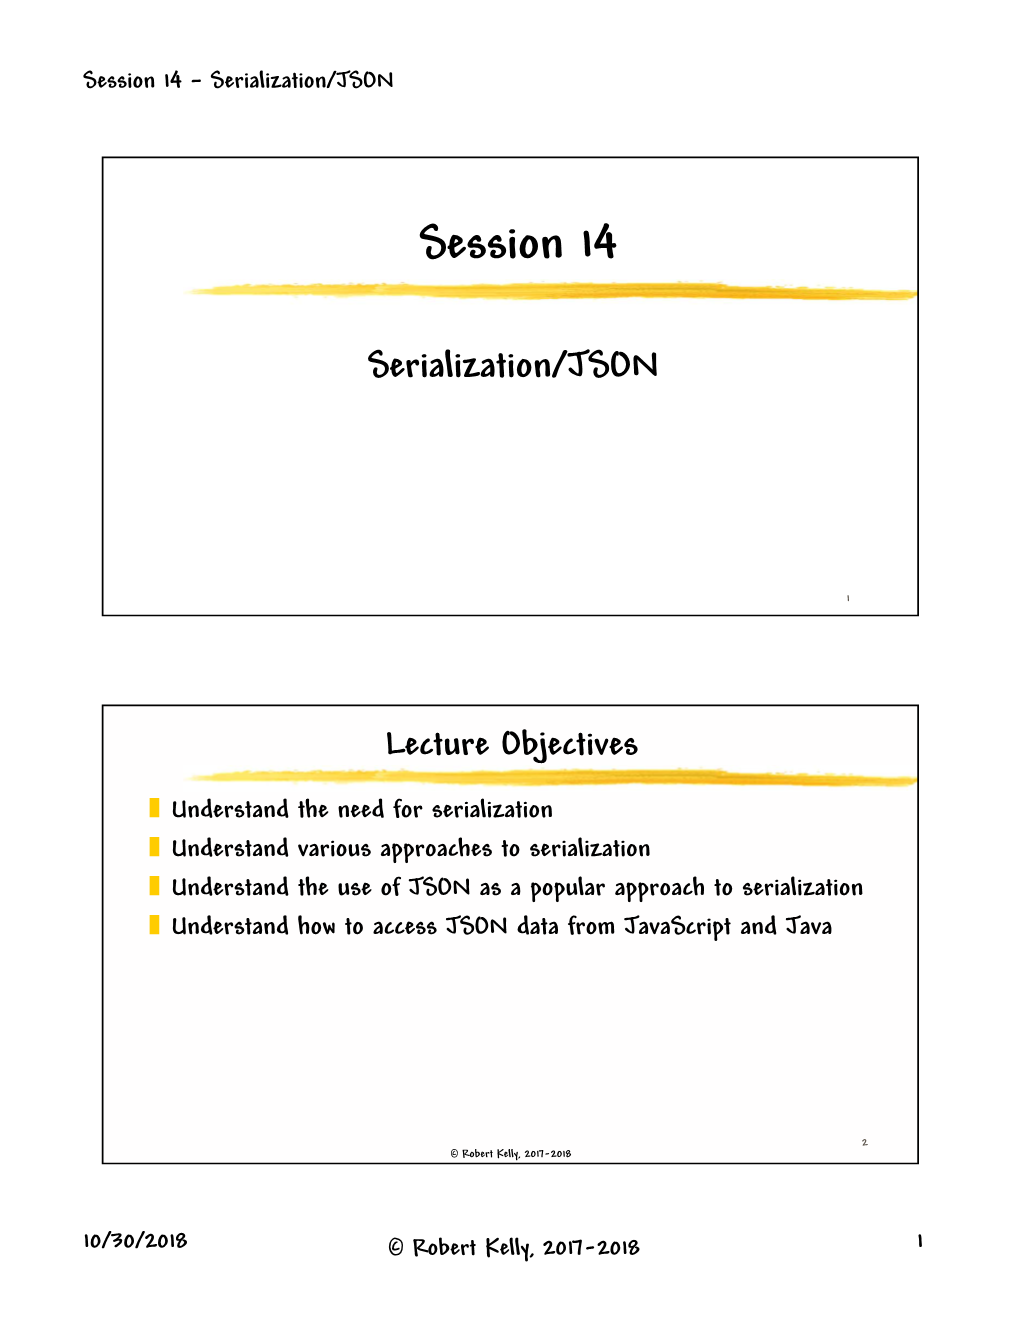 Serialization/JSON